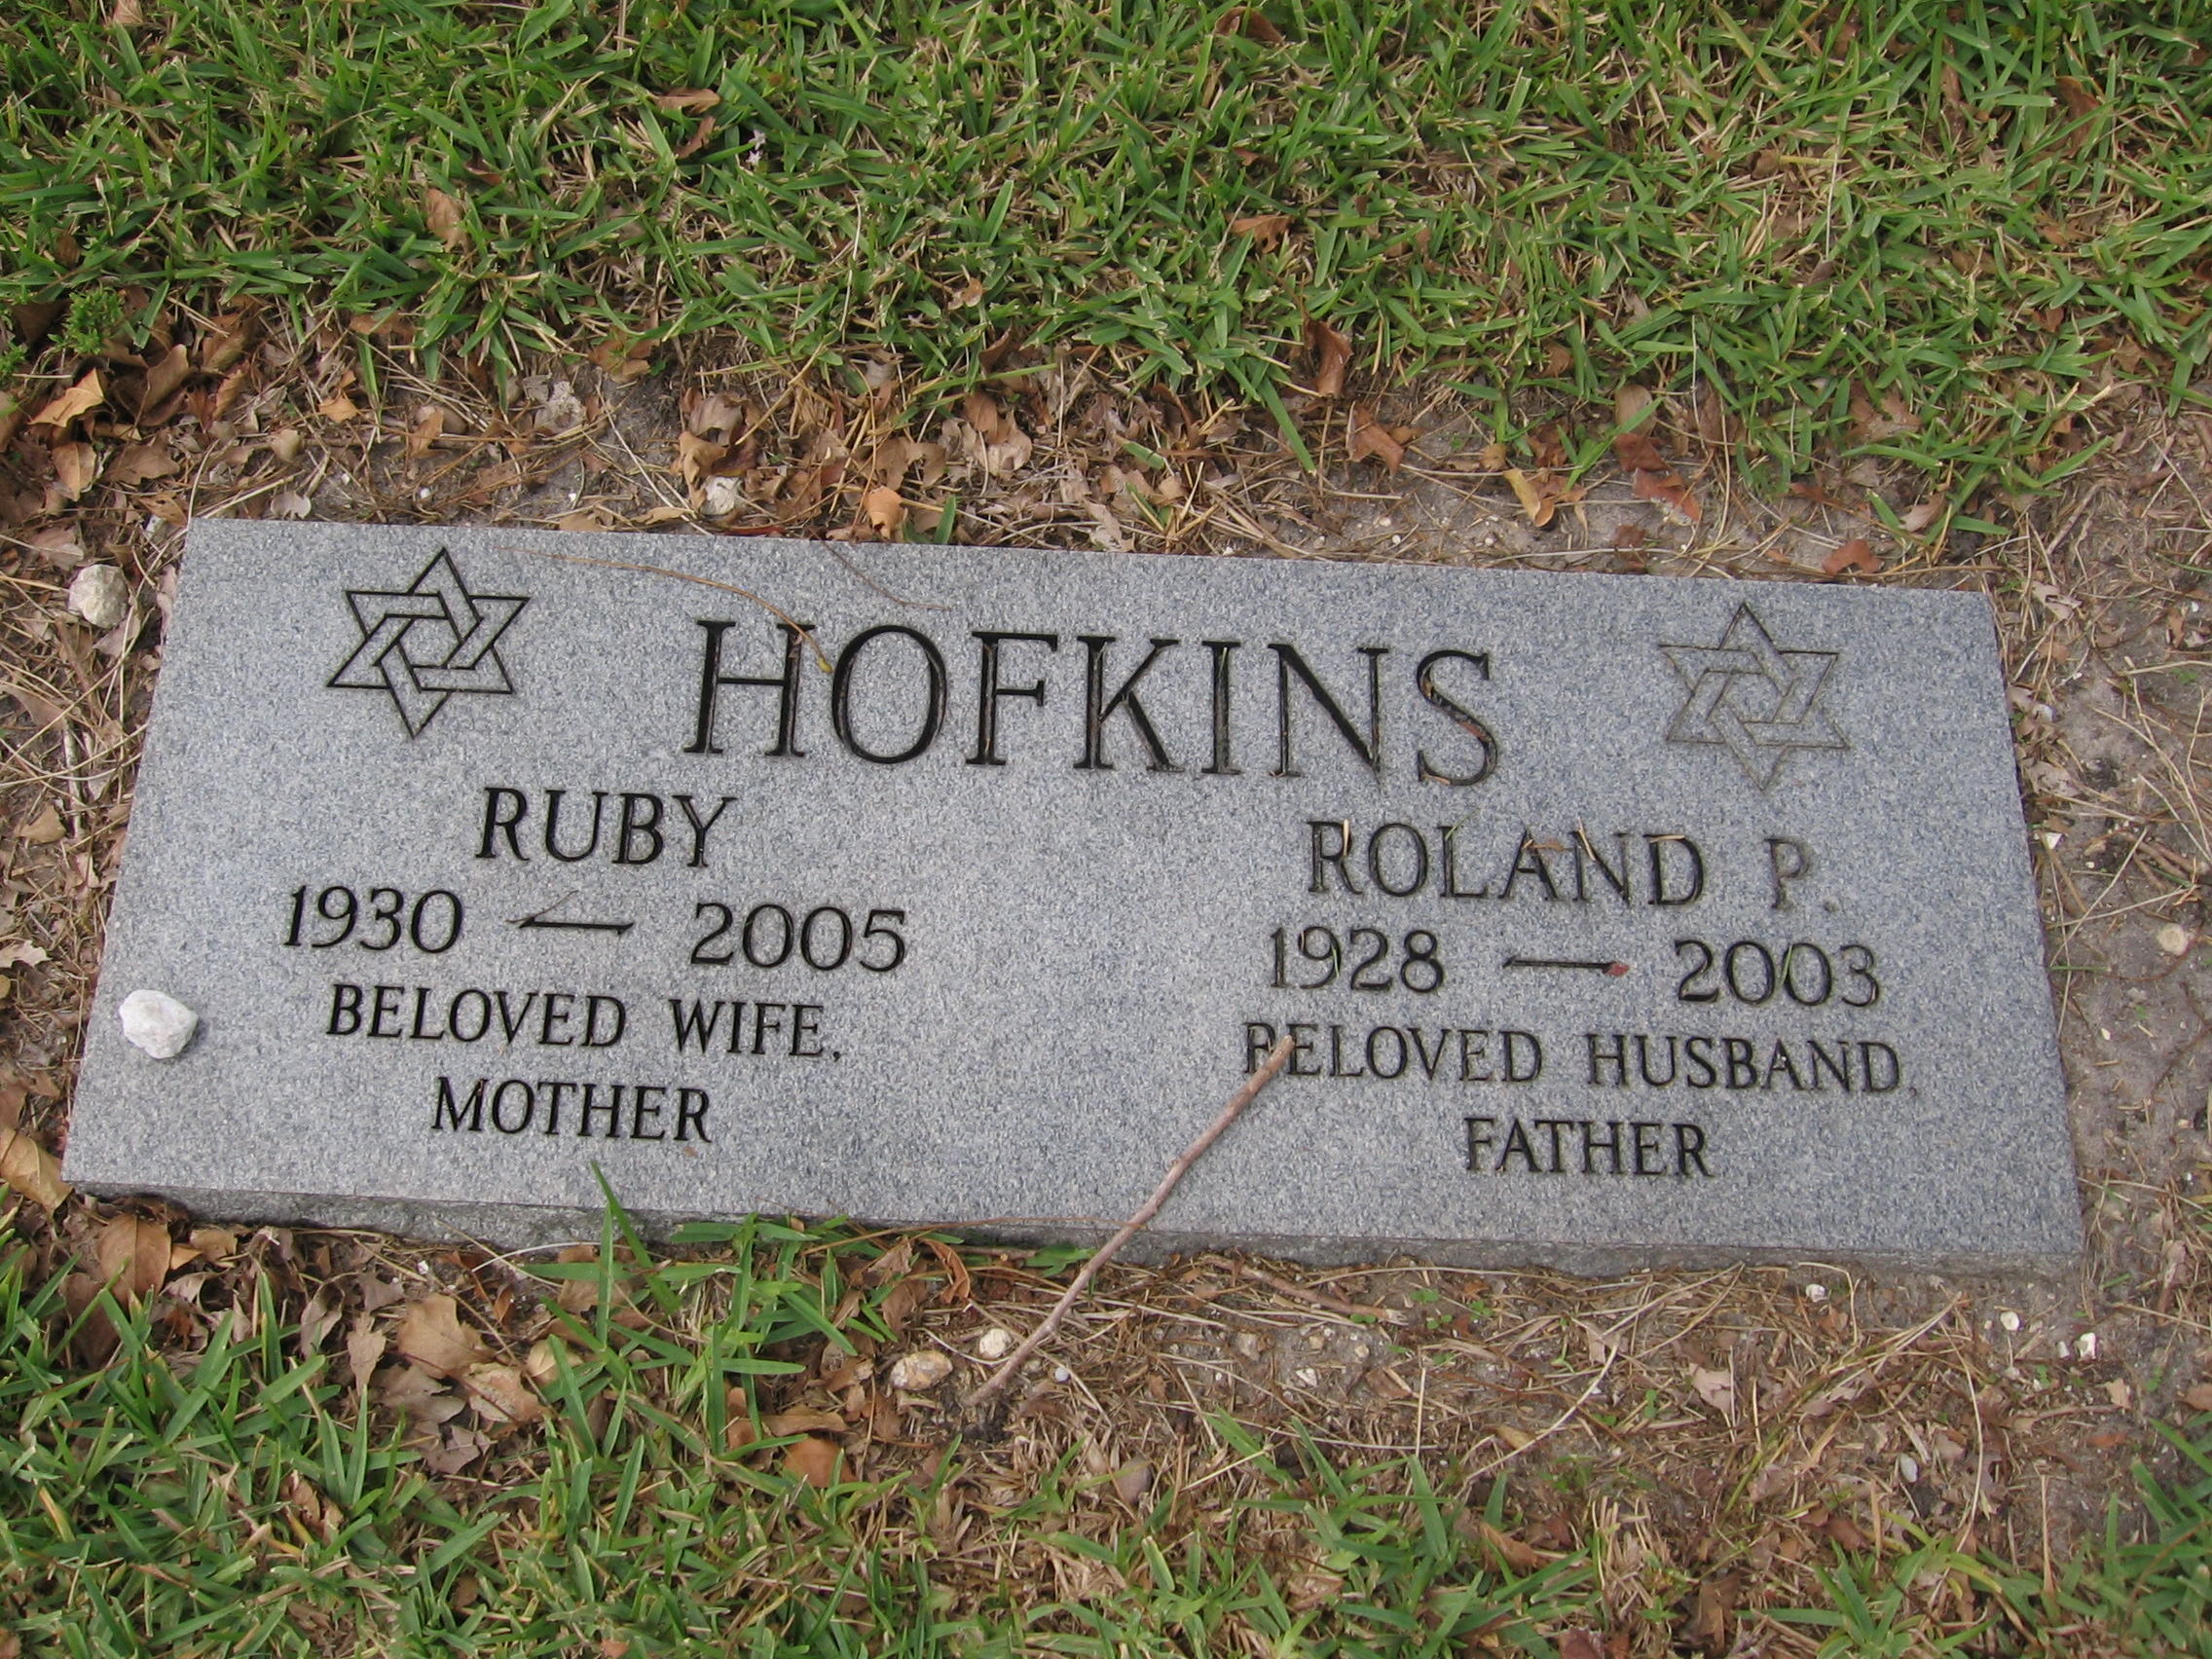 Ruby Hofkins